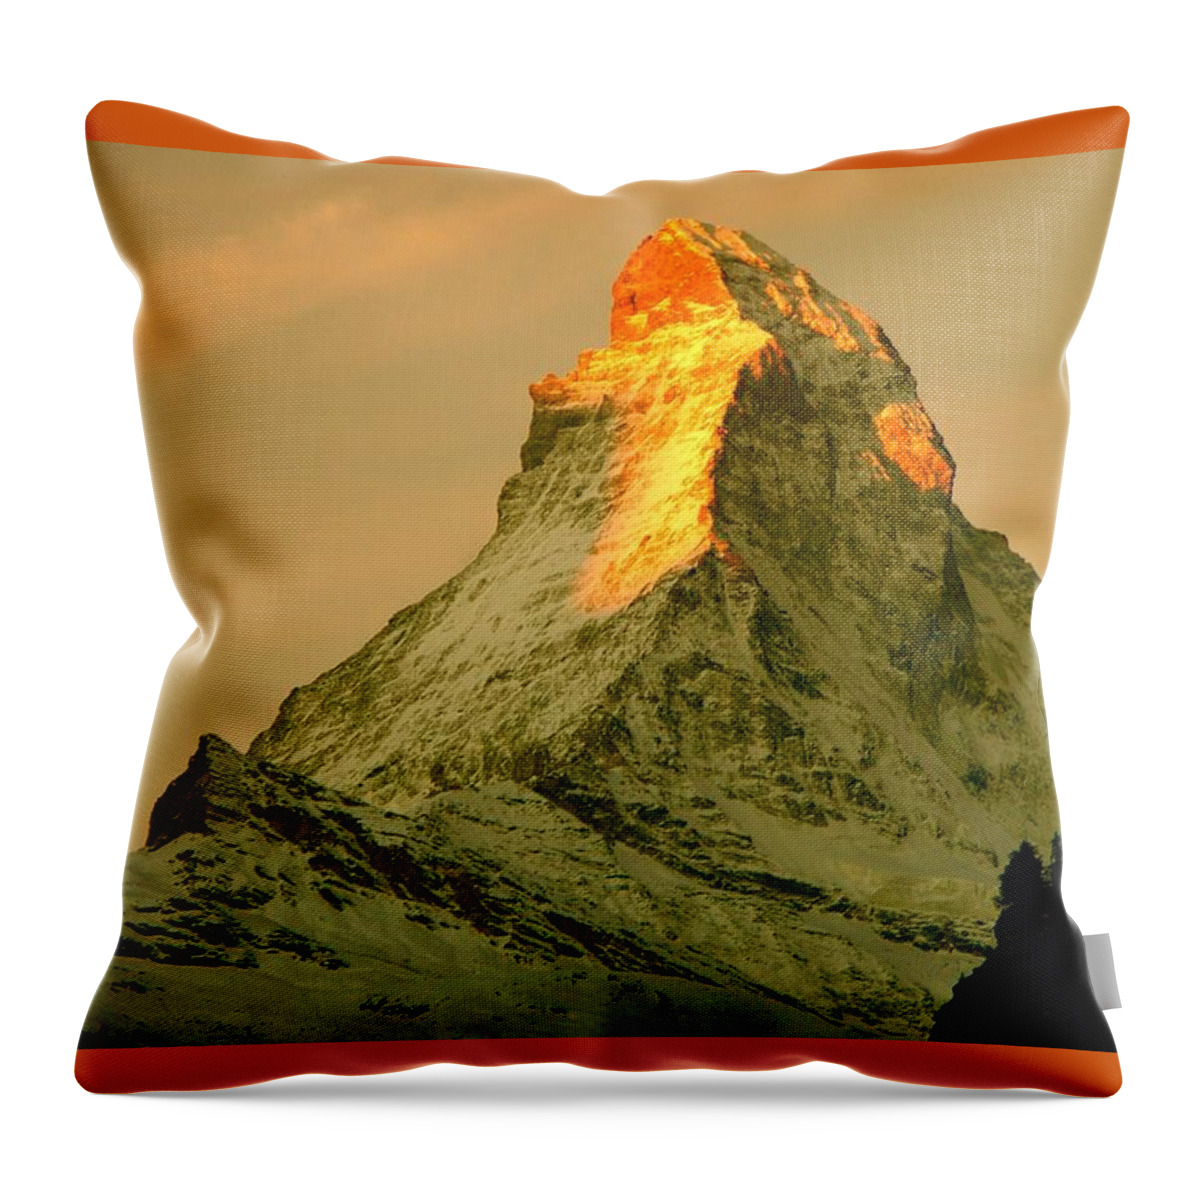 Switzerland Throw Pillow featuring the photograph Matterhorn in Switzerland by Monique Wegmueller